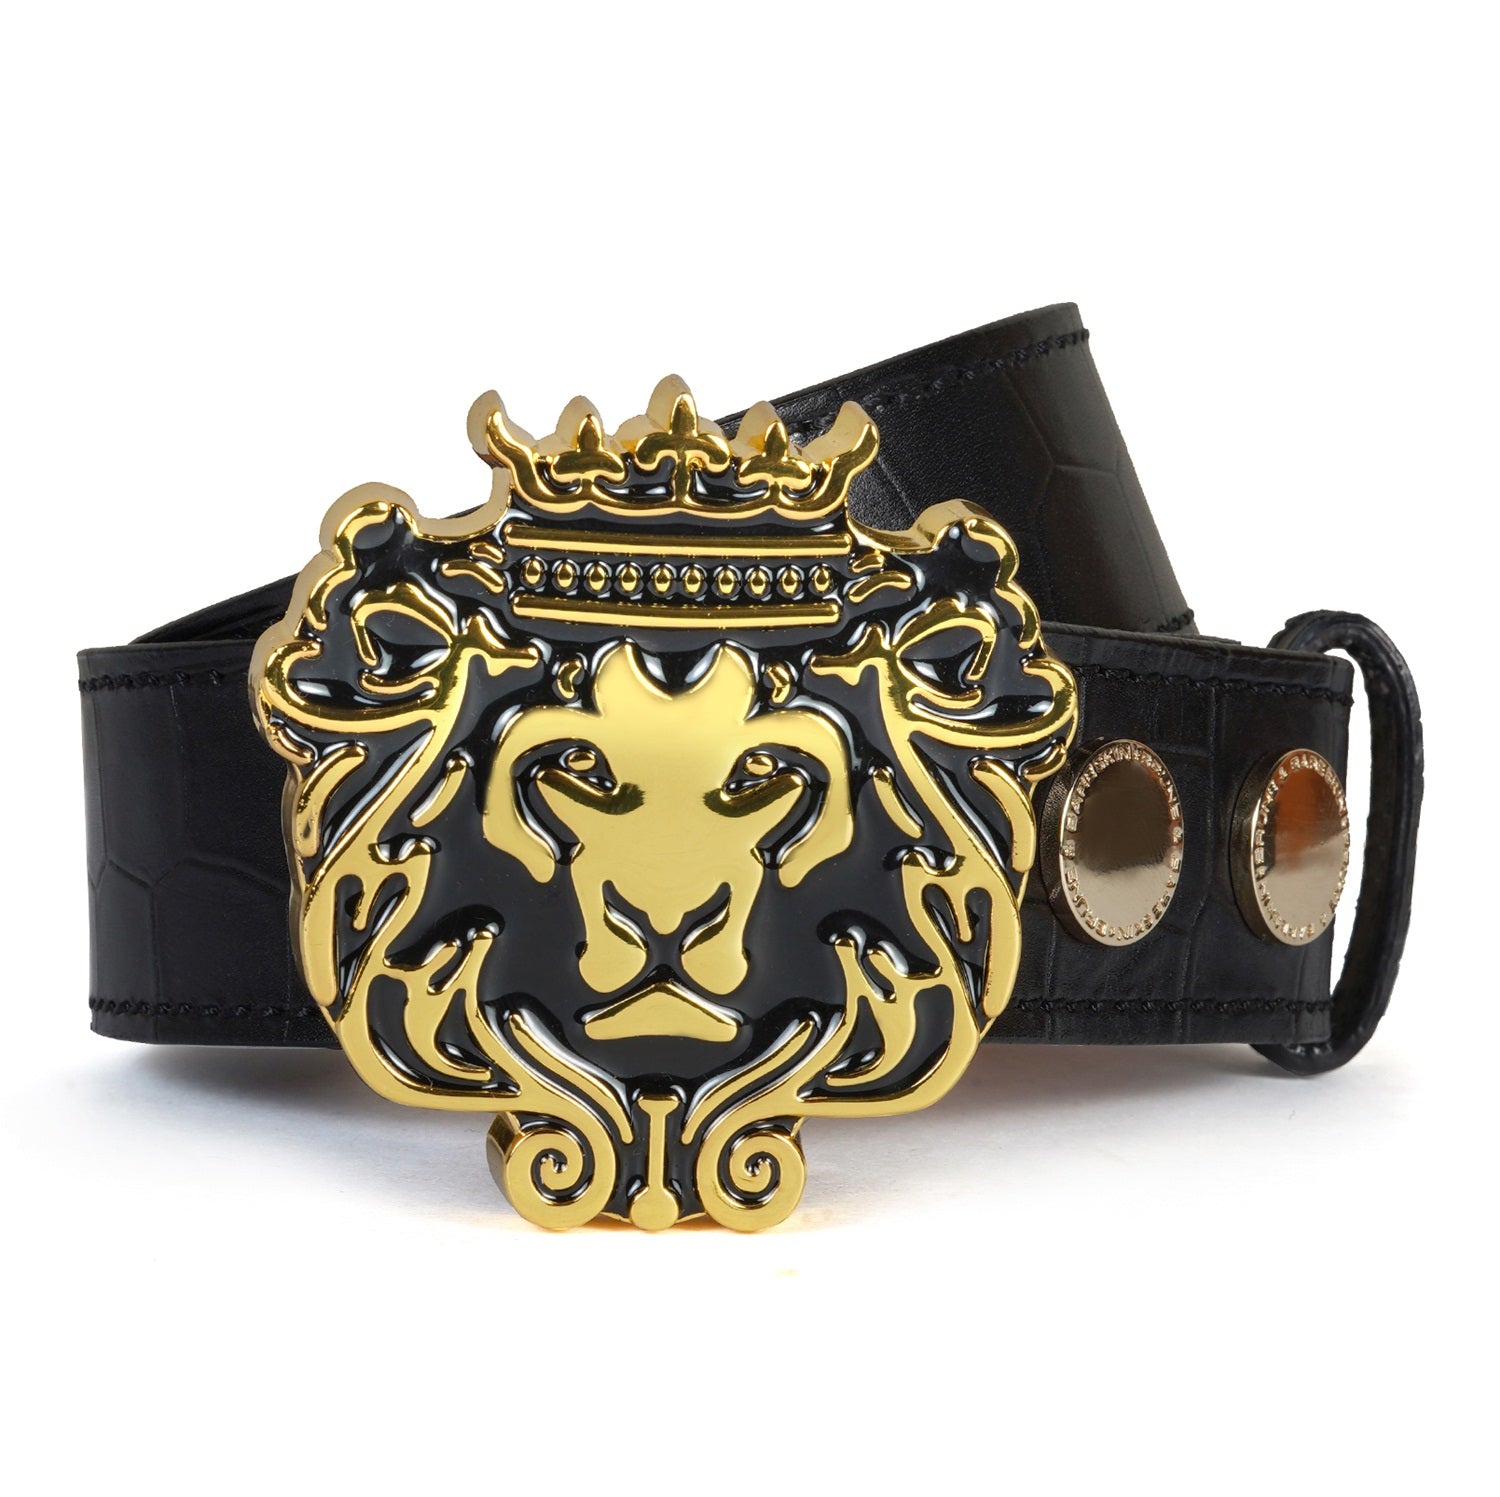 Trademark Lion Logo Golden Buckle Belt in Black Croco Textured Leather